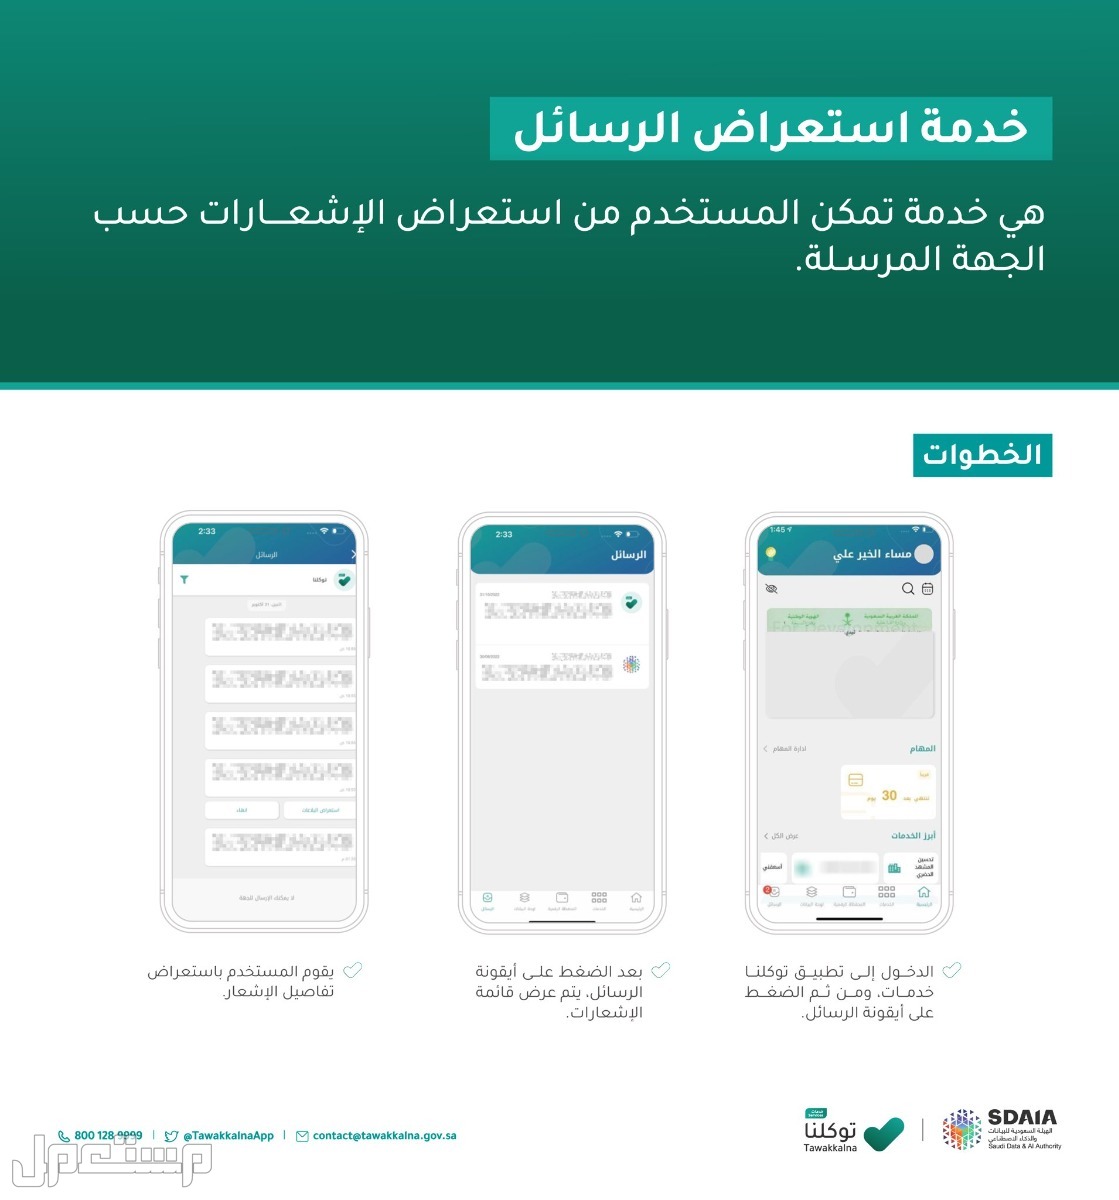 خطوات استعراض إعدادات الحساب في توكلنا خدمات في الإمارات العربية المتحدة